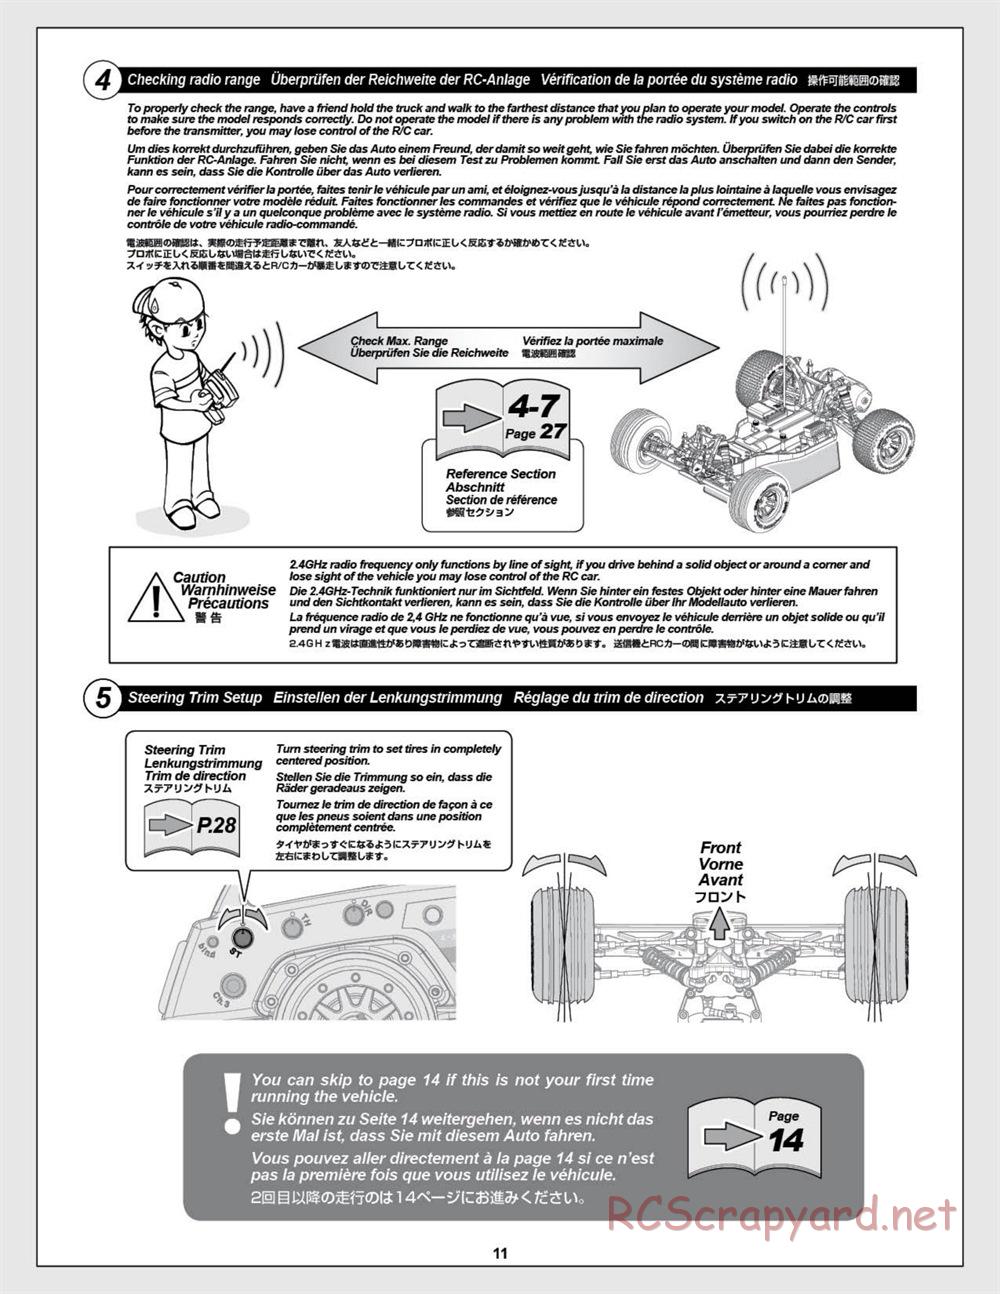 HPI - E-Firestorm-10T - Manual - Page 11